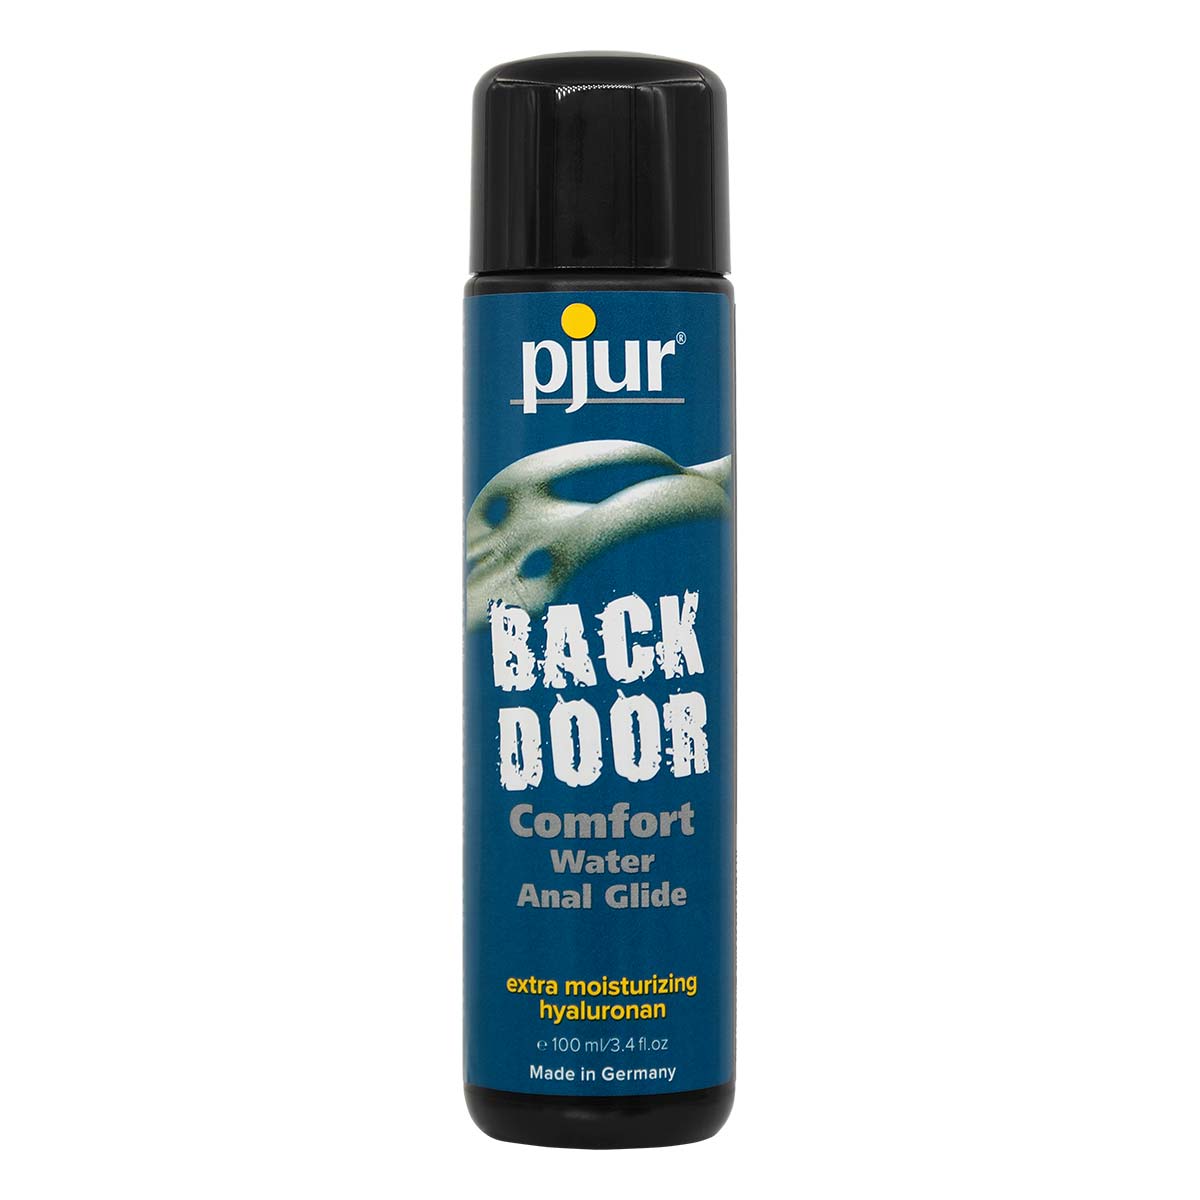 pjur BACK DOOR COMFORT Water Anal Glide 100ml Water-based Lubricant-thumb_2